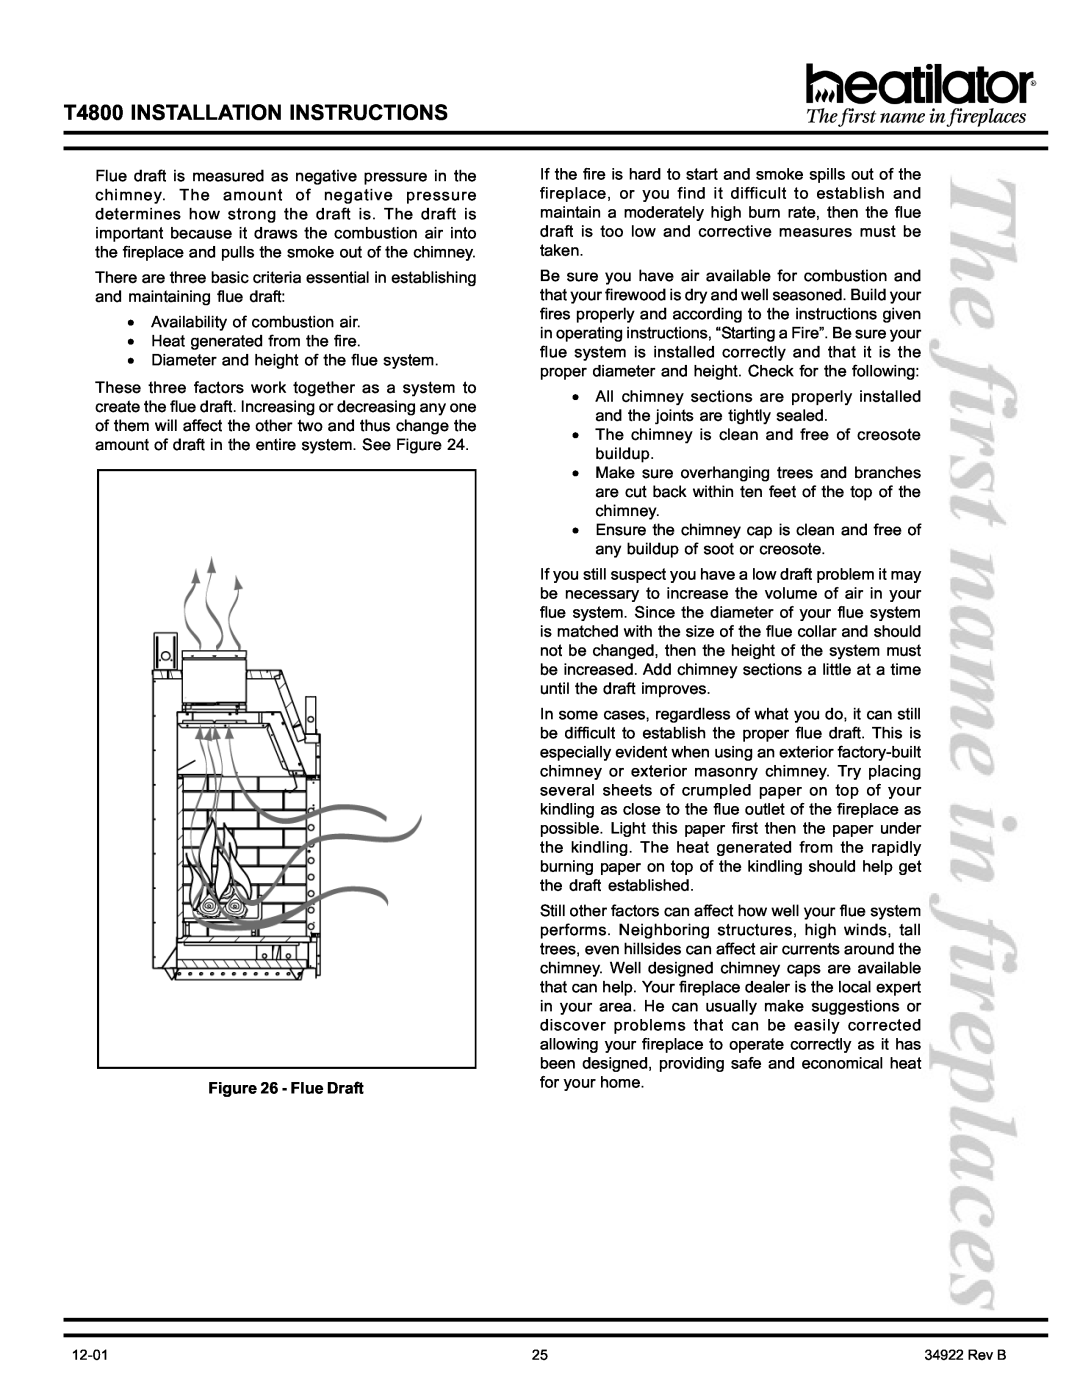 Heatiator manual Flue Draft, T4800 INSTALLATION INSTRUCTIONS 